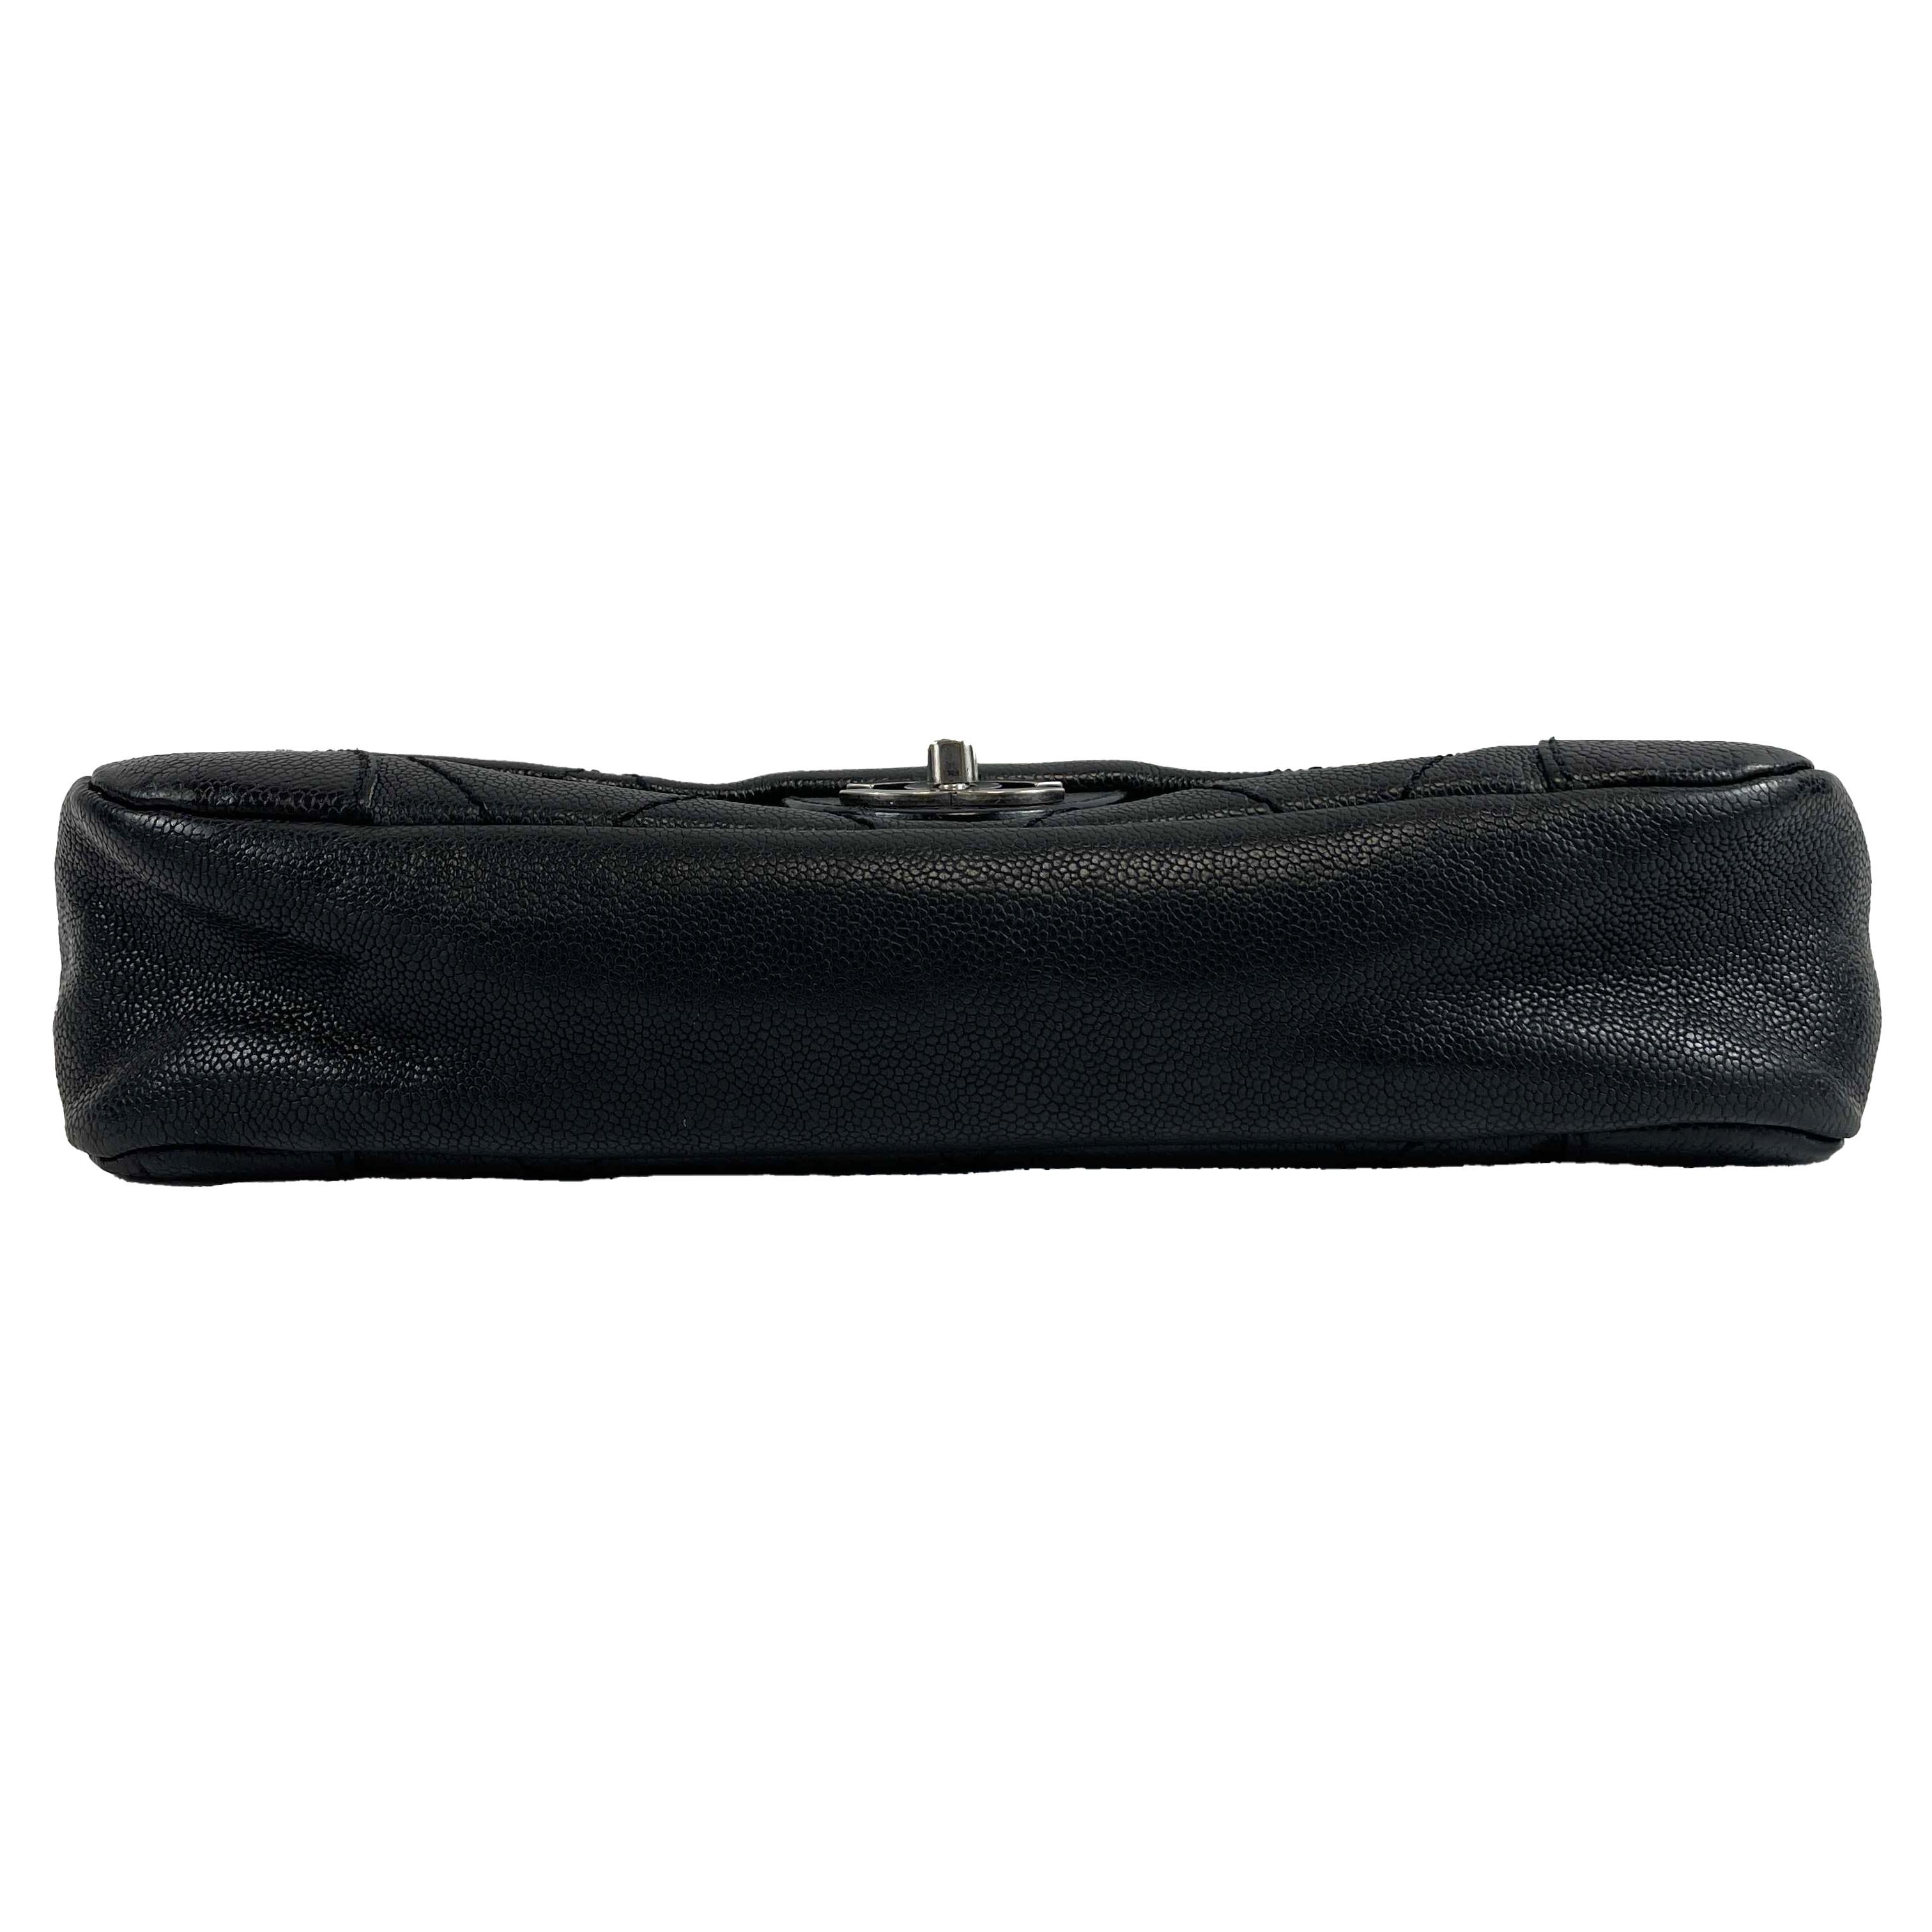 	CHANEL - CC Ligne Flap Large Bag Black / Silver Caviar Leather Shoulder Bag 3